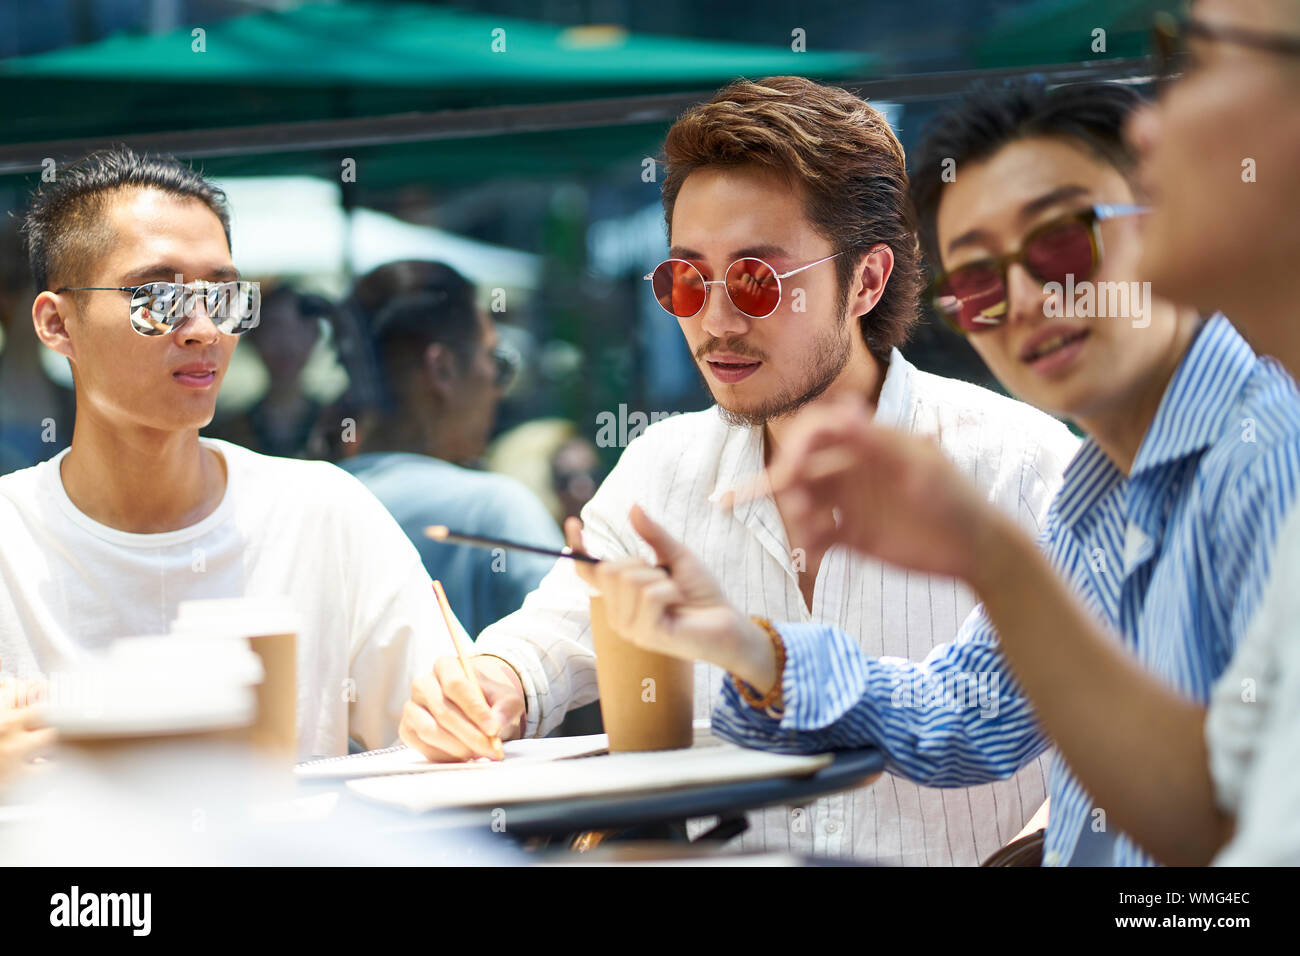 Les jeunes étudiants asiatiques ayant un groupe de discussion à un café-restaurant en plein air Banque D'Images